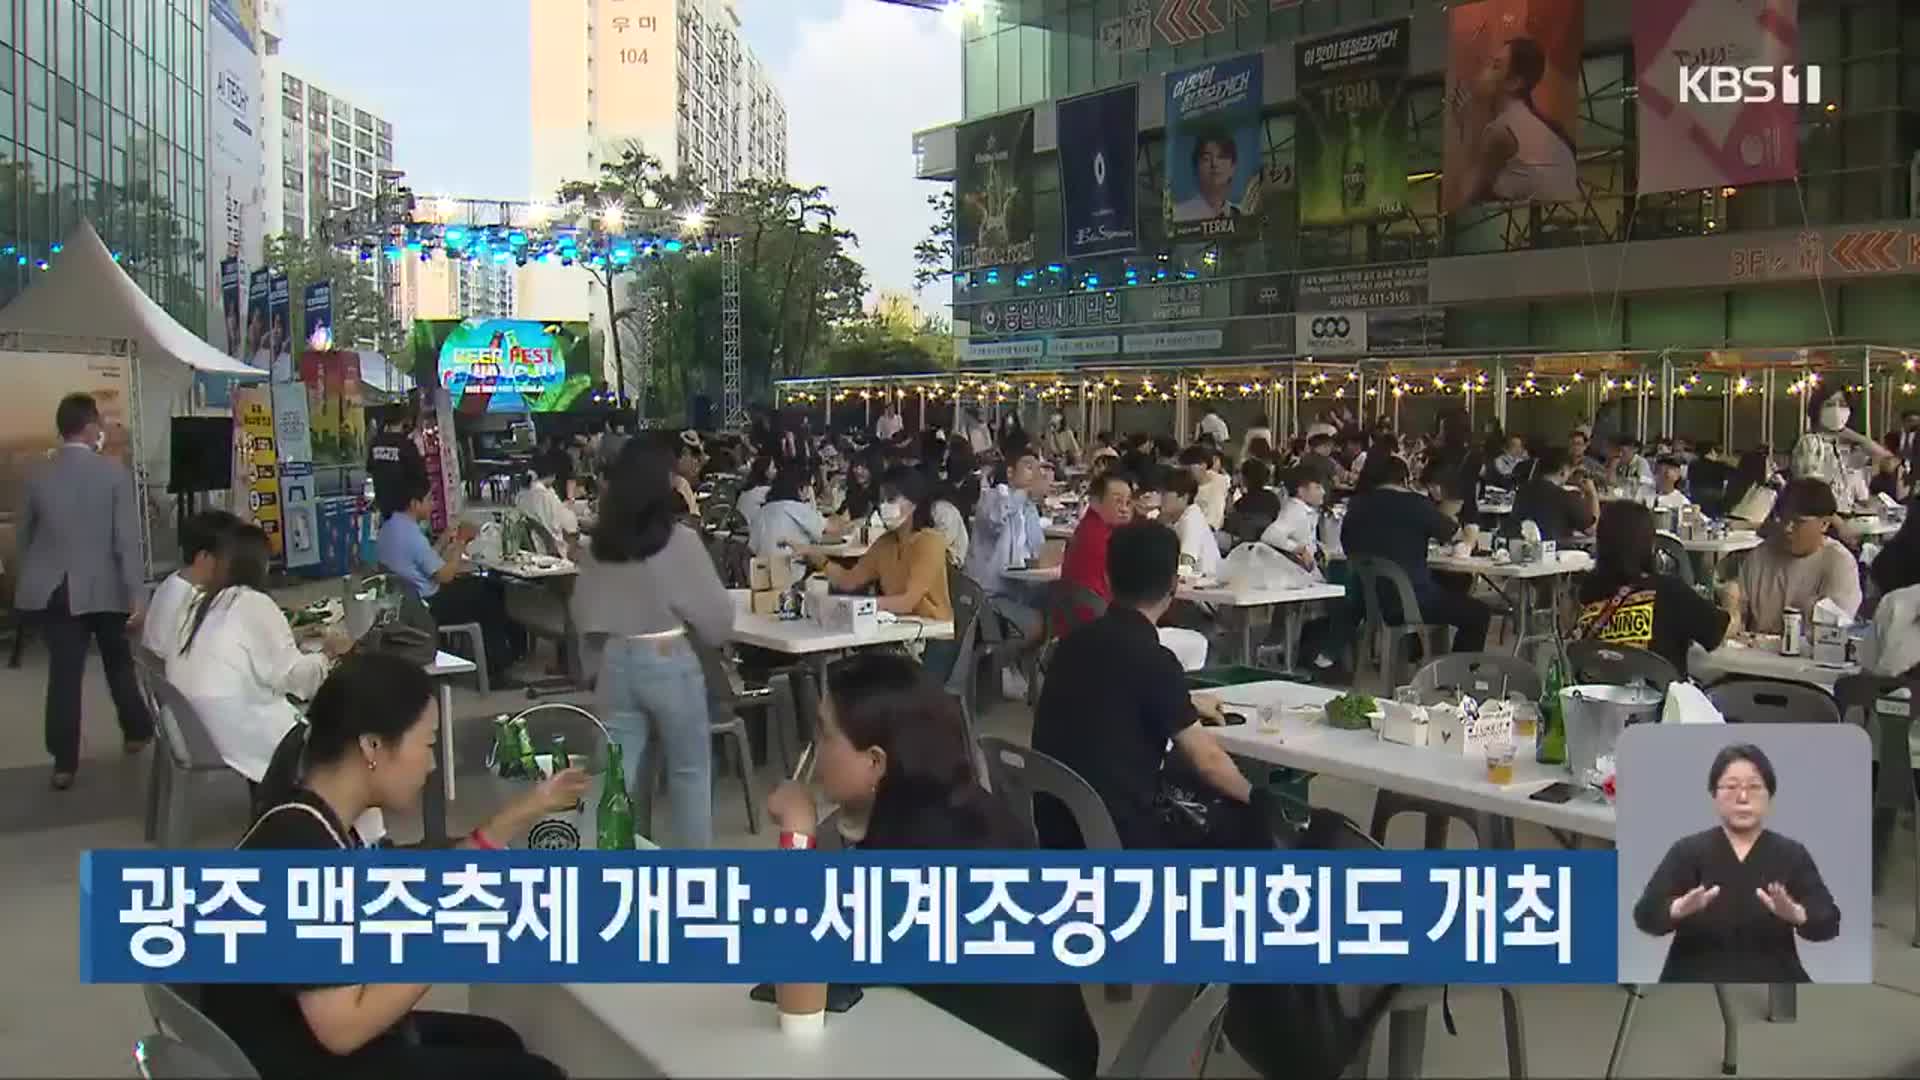 광주 맥주축제 개막…세계조경가대회도 개최